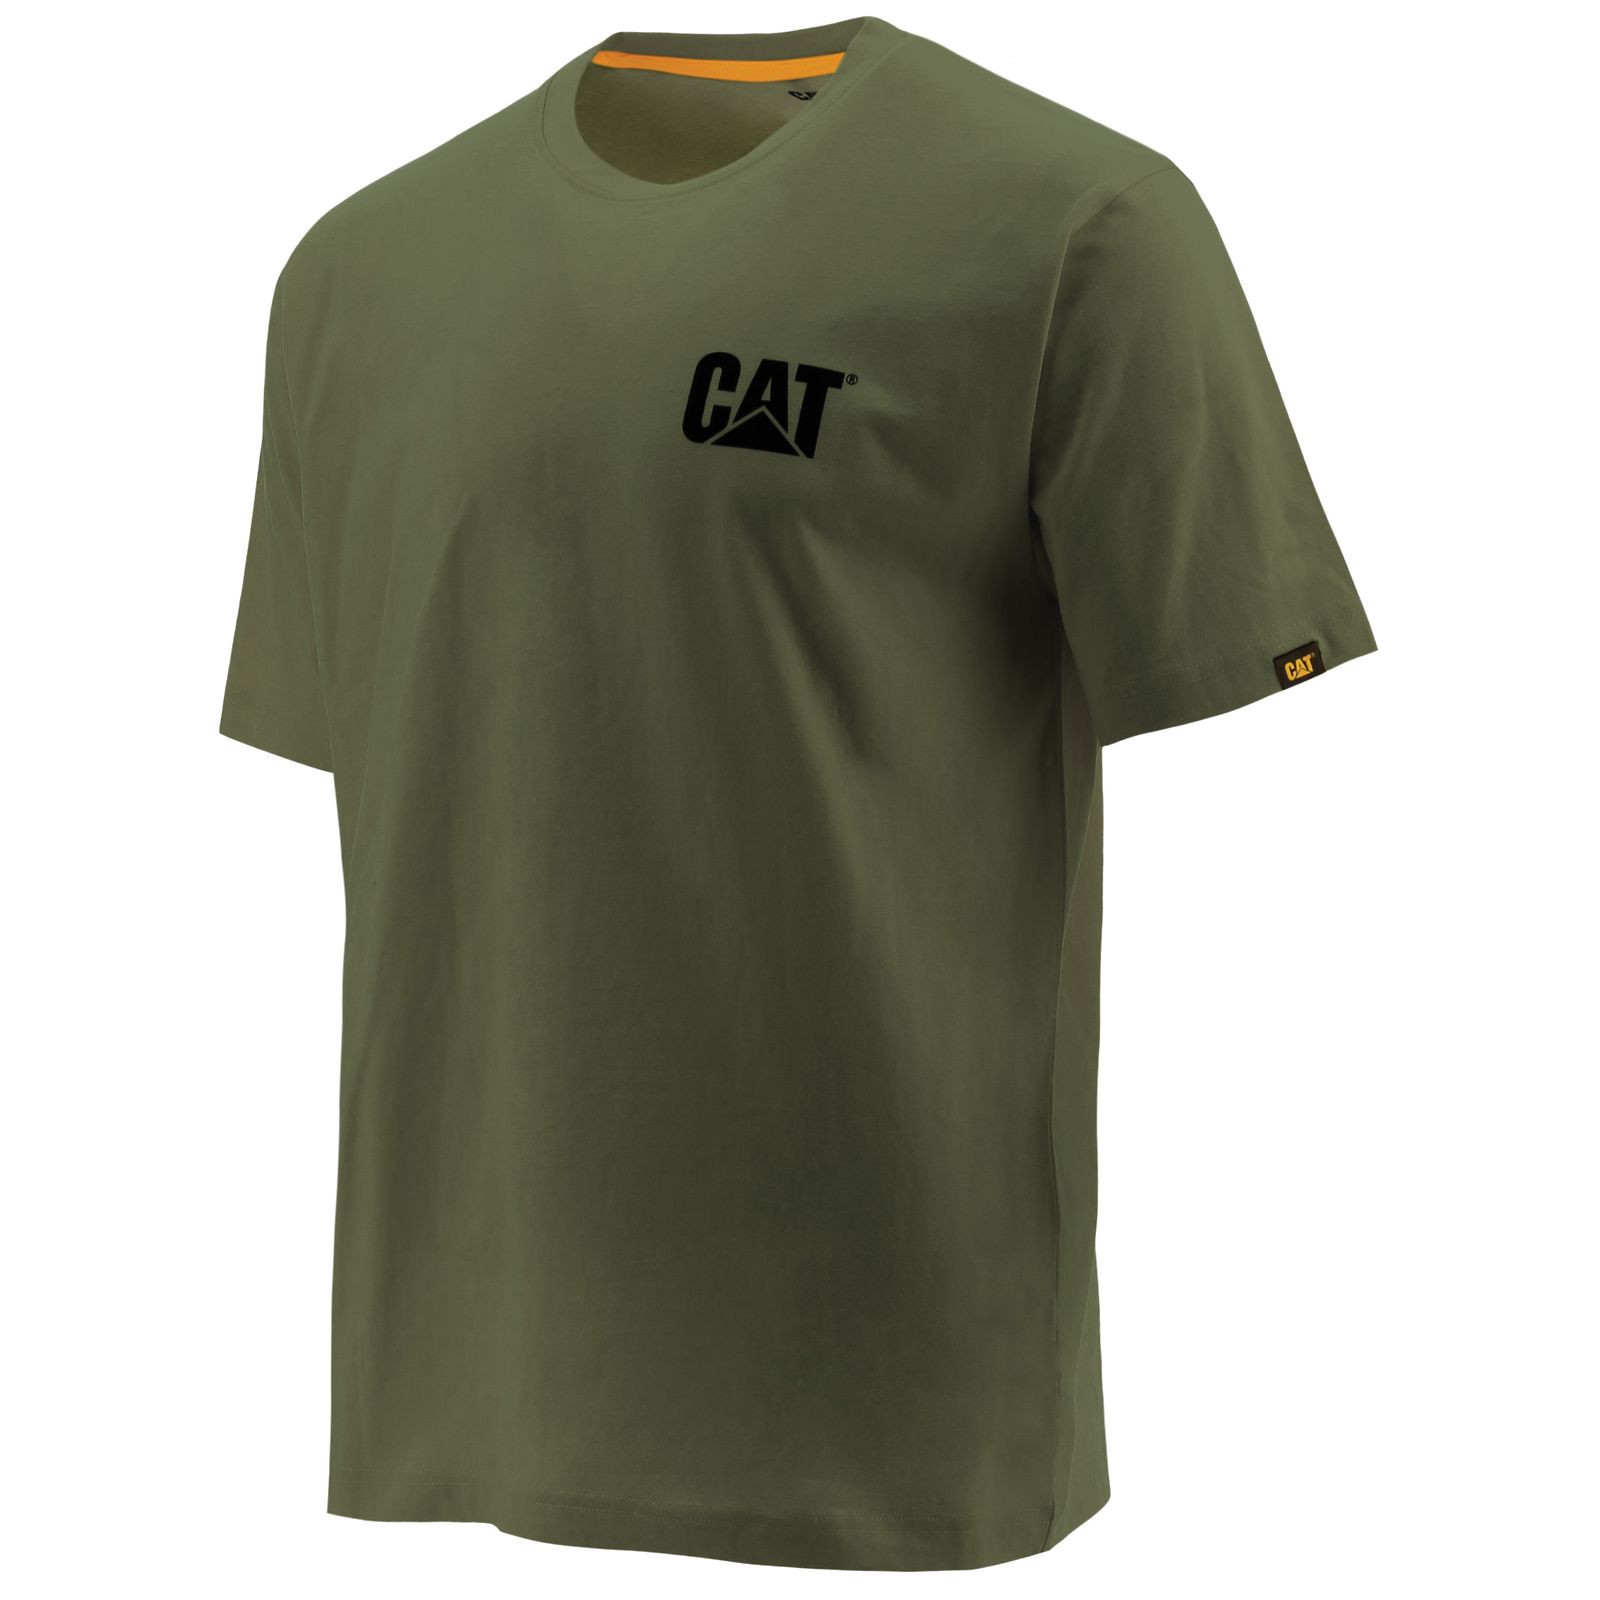 Caterpillar T-Shirts Online UAE - Caterpillar Trademark Mens - Green PTBCJR739